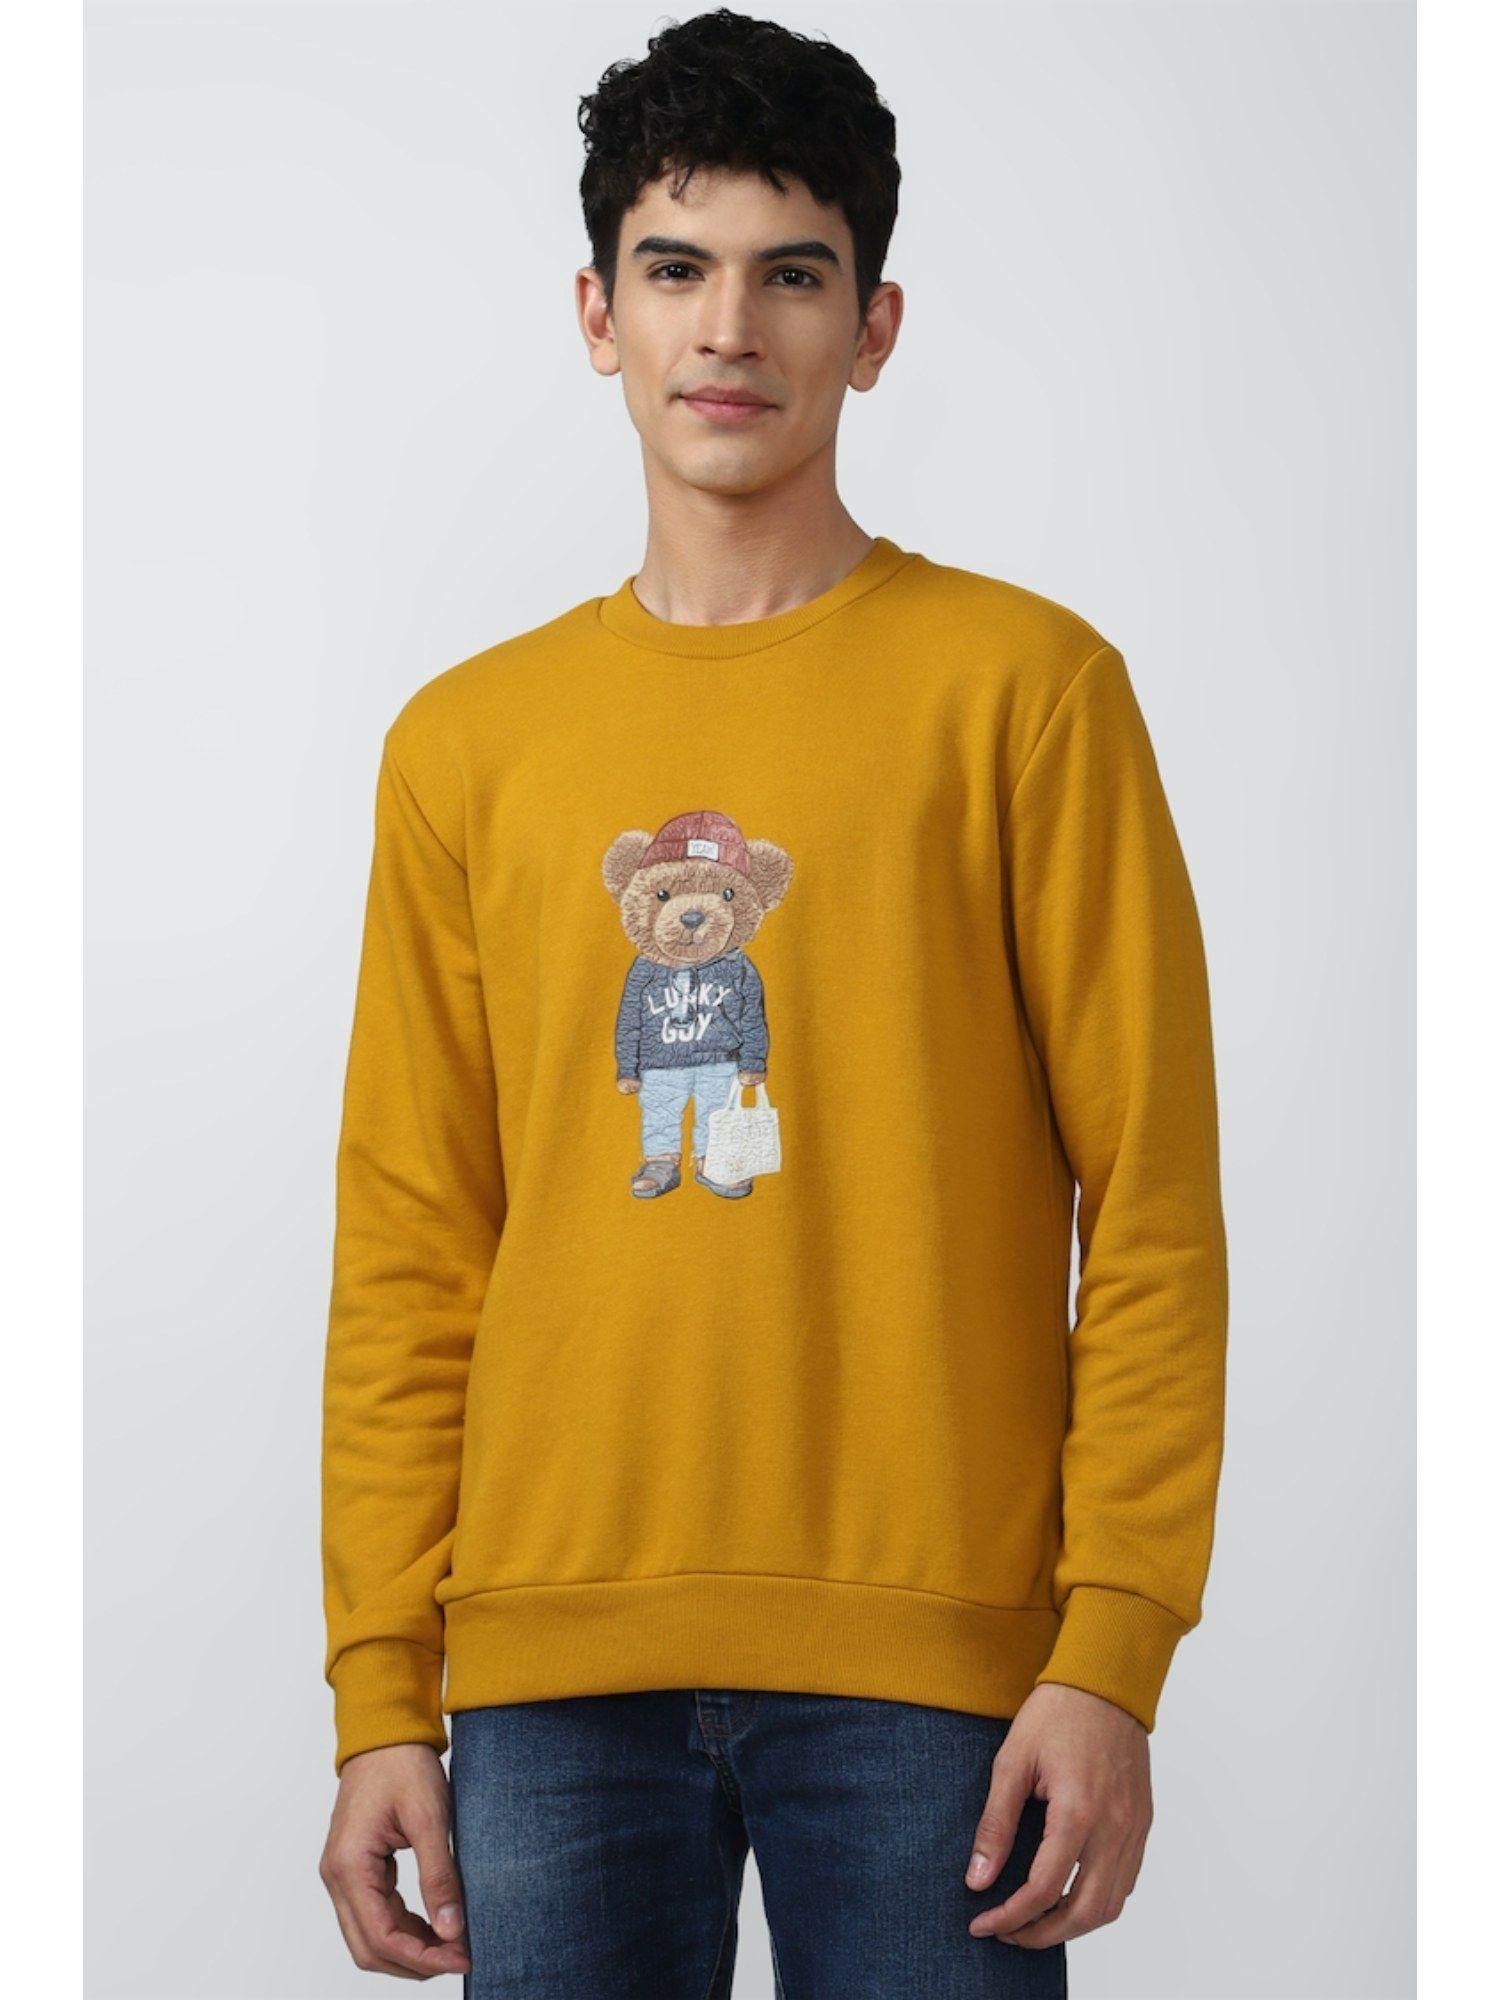 graphic sweatshirt in yellow